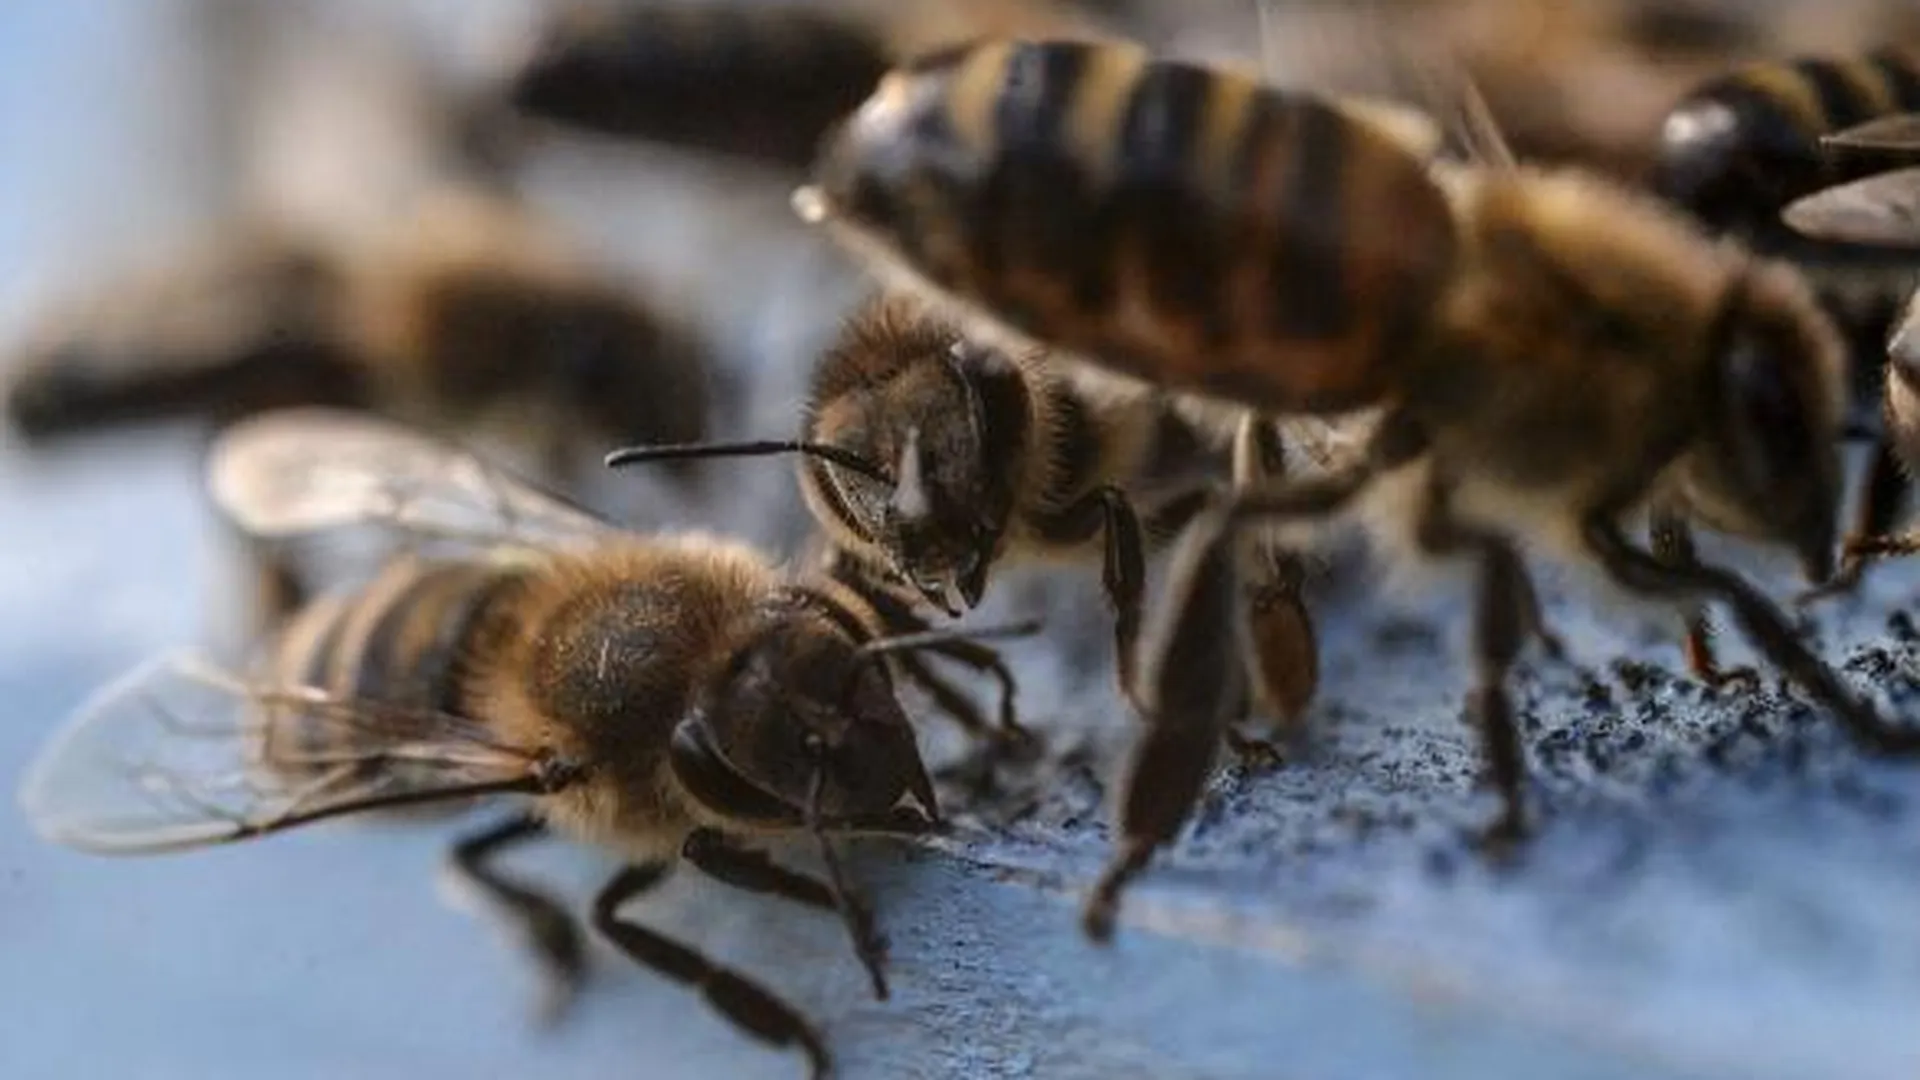 Акция в защиту пчел для Книги рекордов Гиннеса пройдет в Королеве